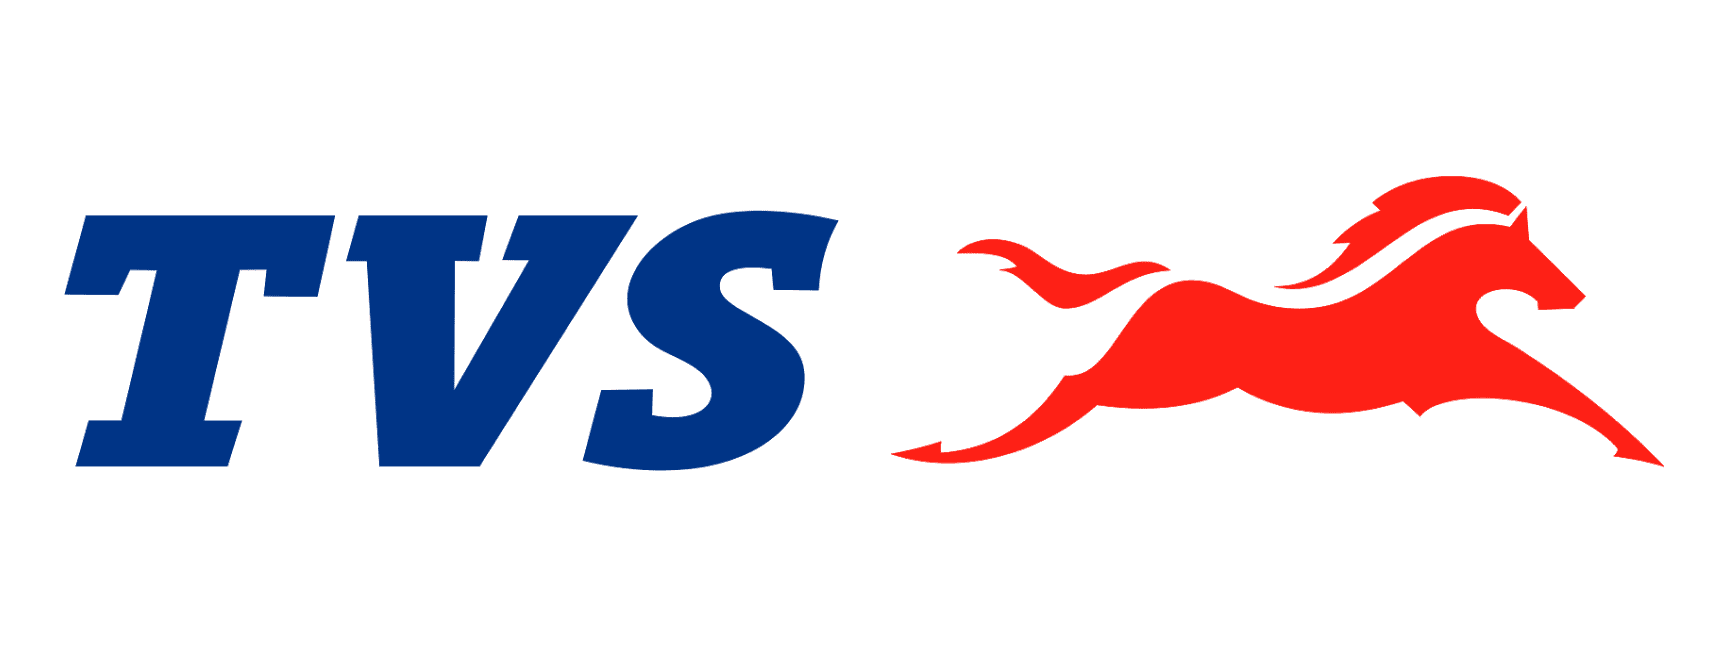 TVS-Motor-Company-logo